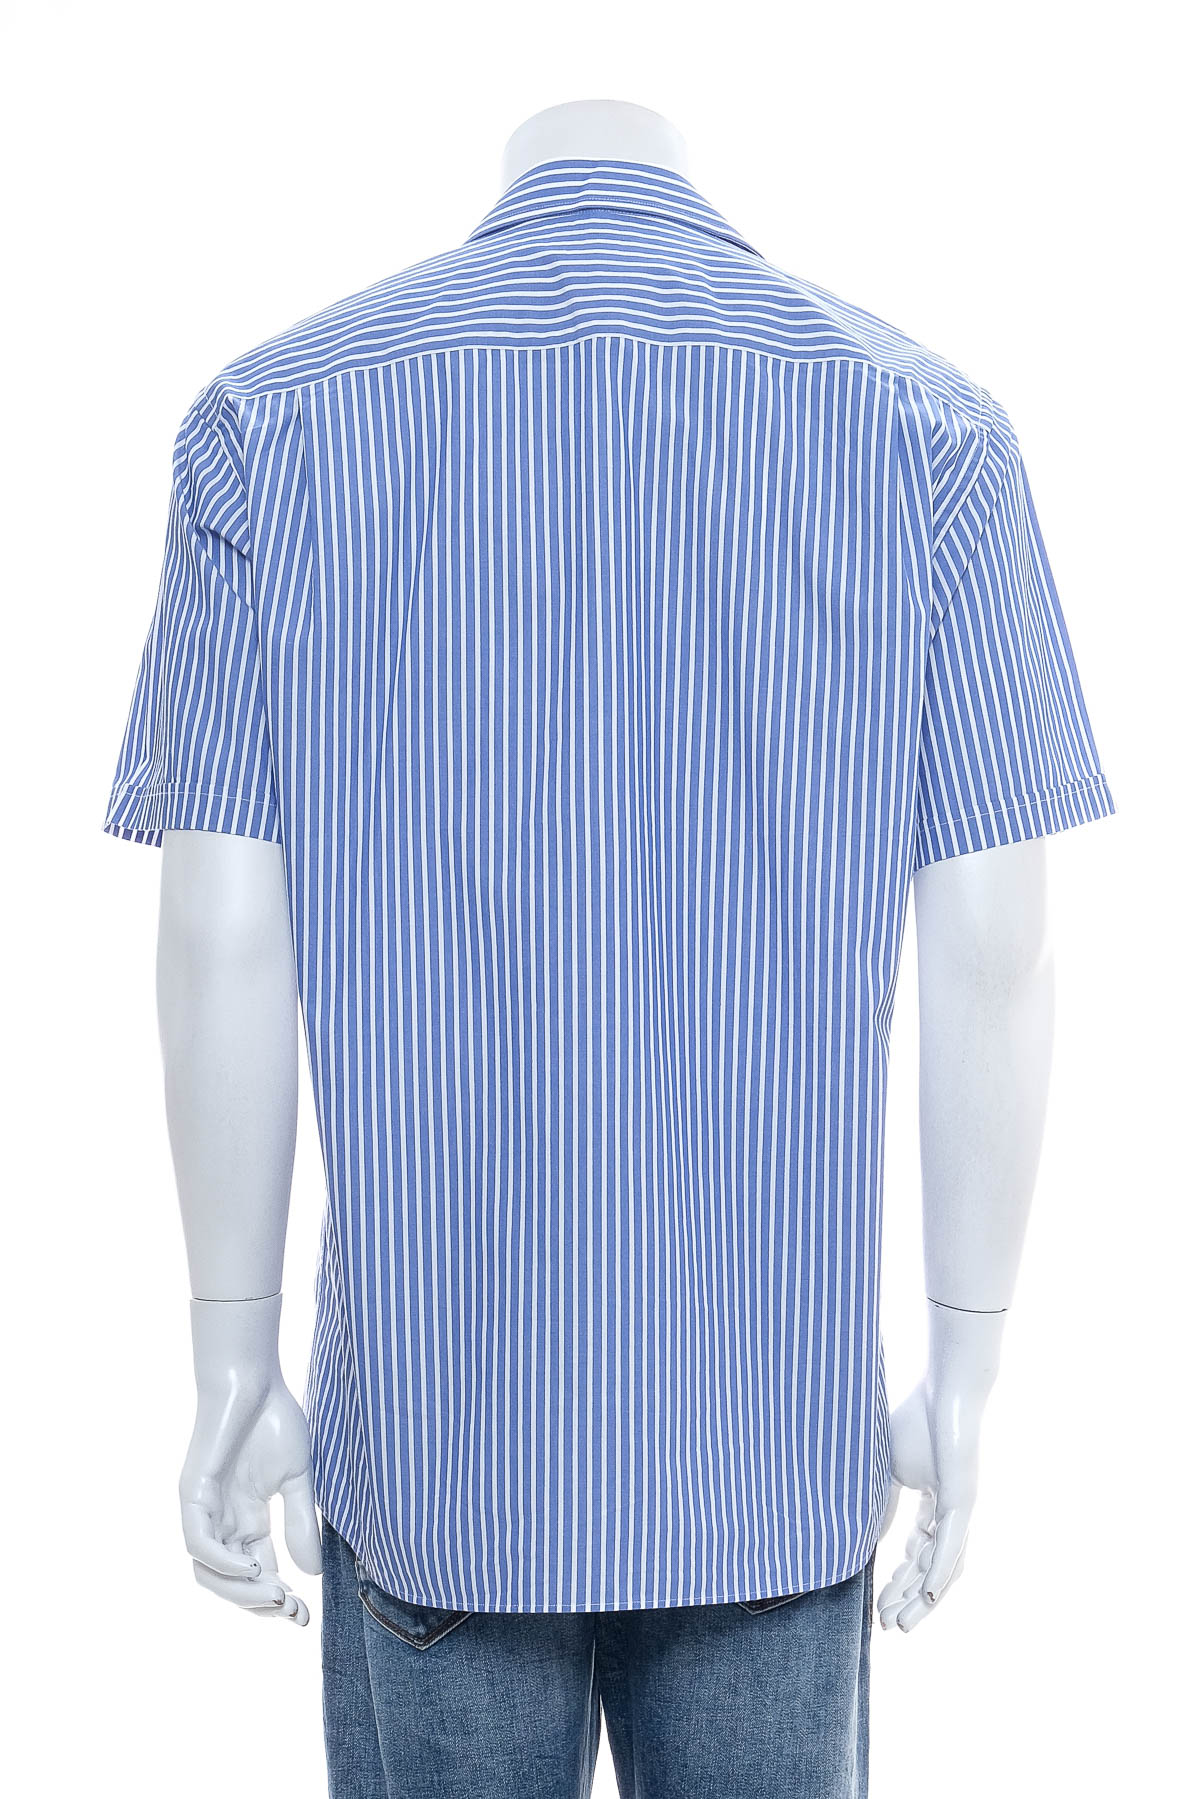 Ανδρικό πουκάμισο - Paul R. Smith - 1